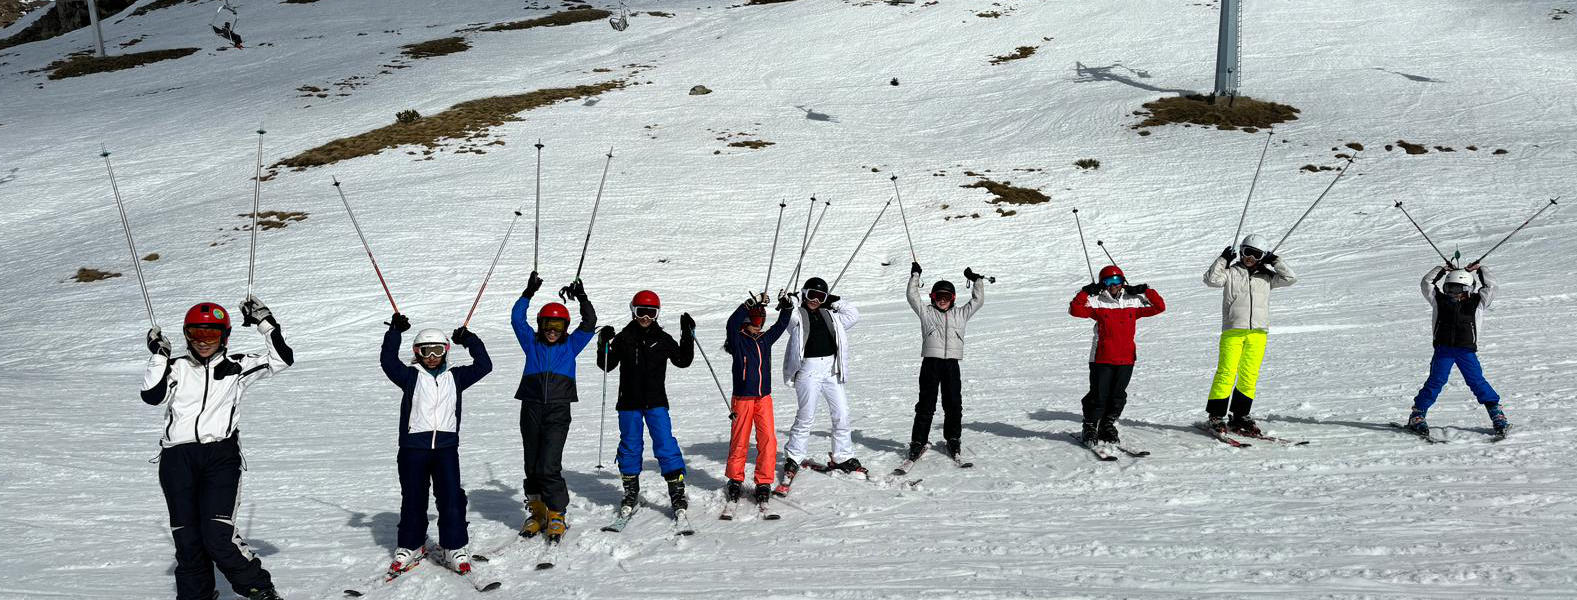 Equipo ski bastones arriba page header